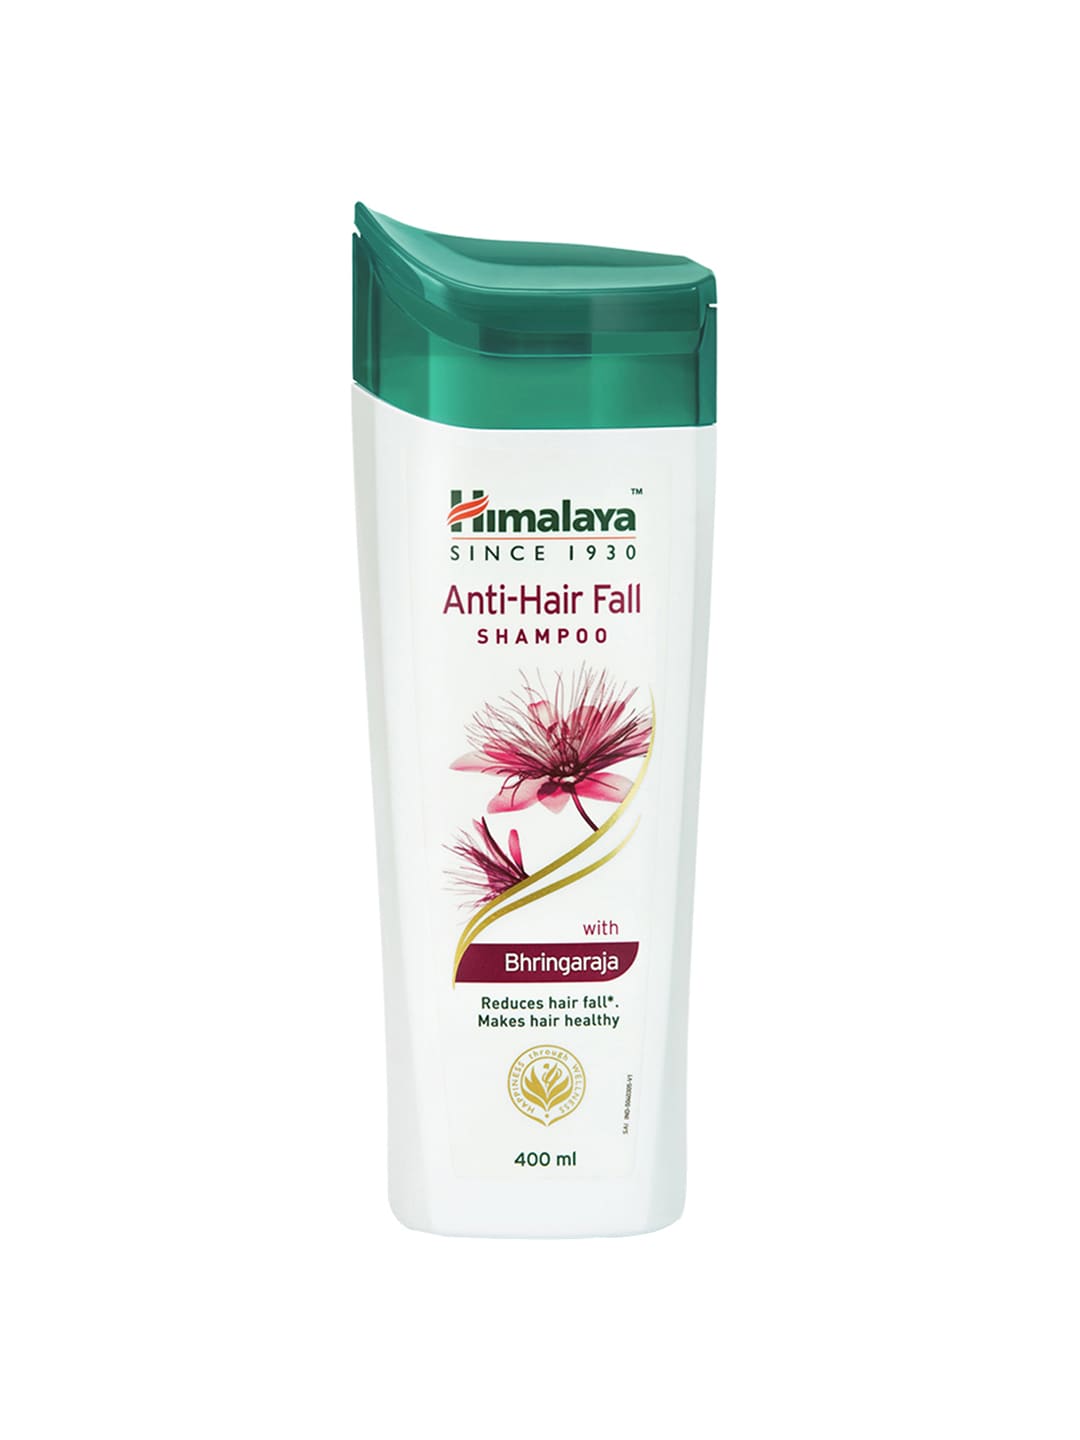 Himalaya Anti-Hair Fall Shampoo 400 ml Price in India